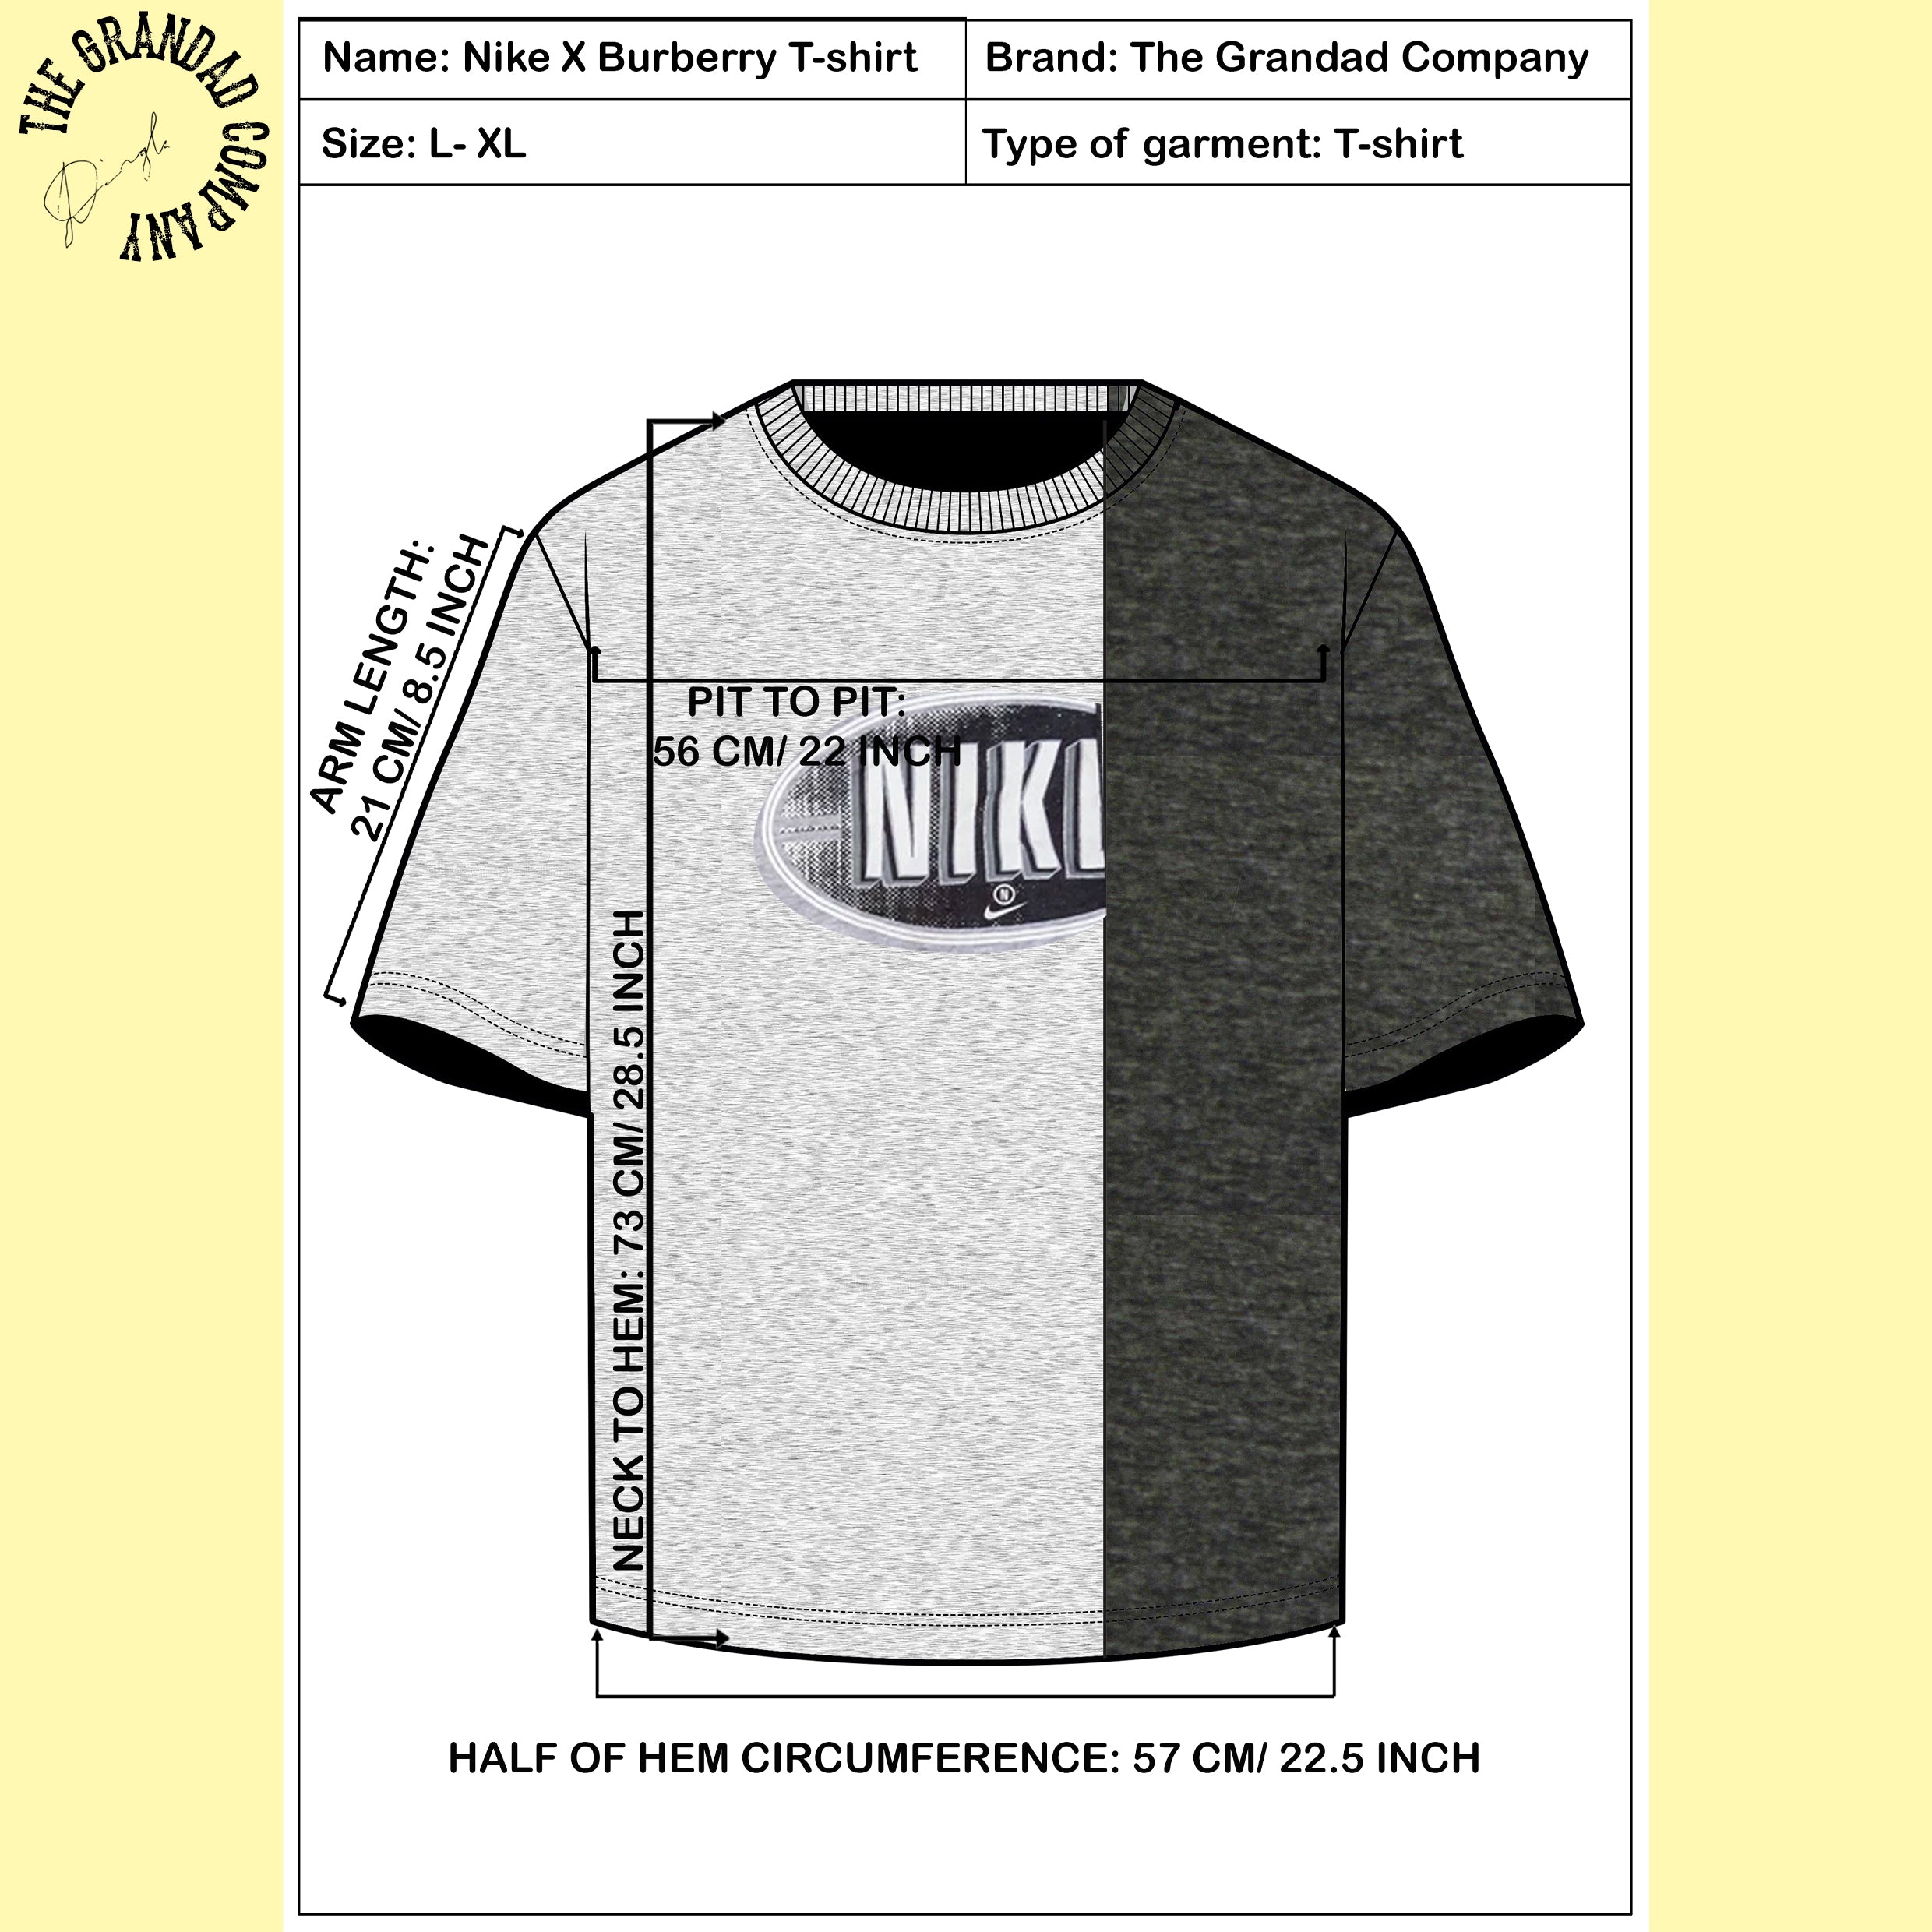 Nike X Burberry T-shirt